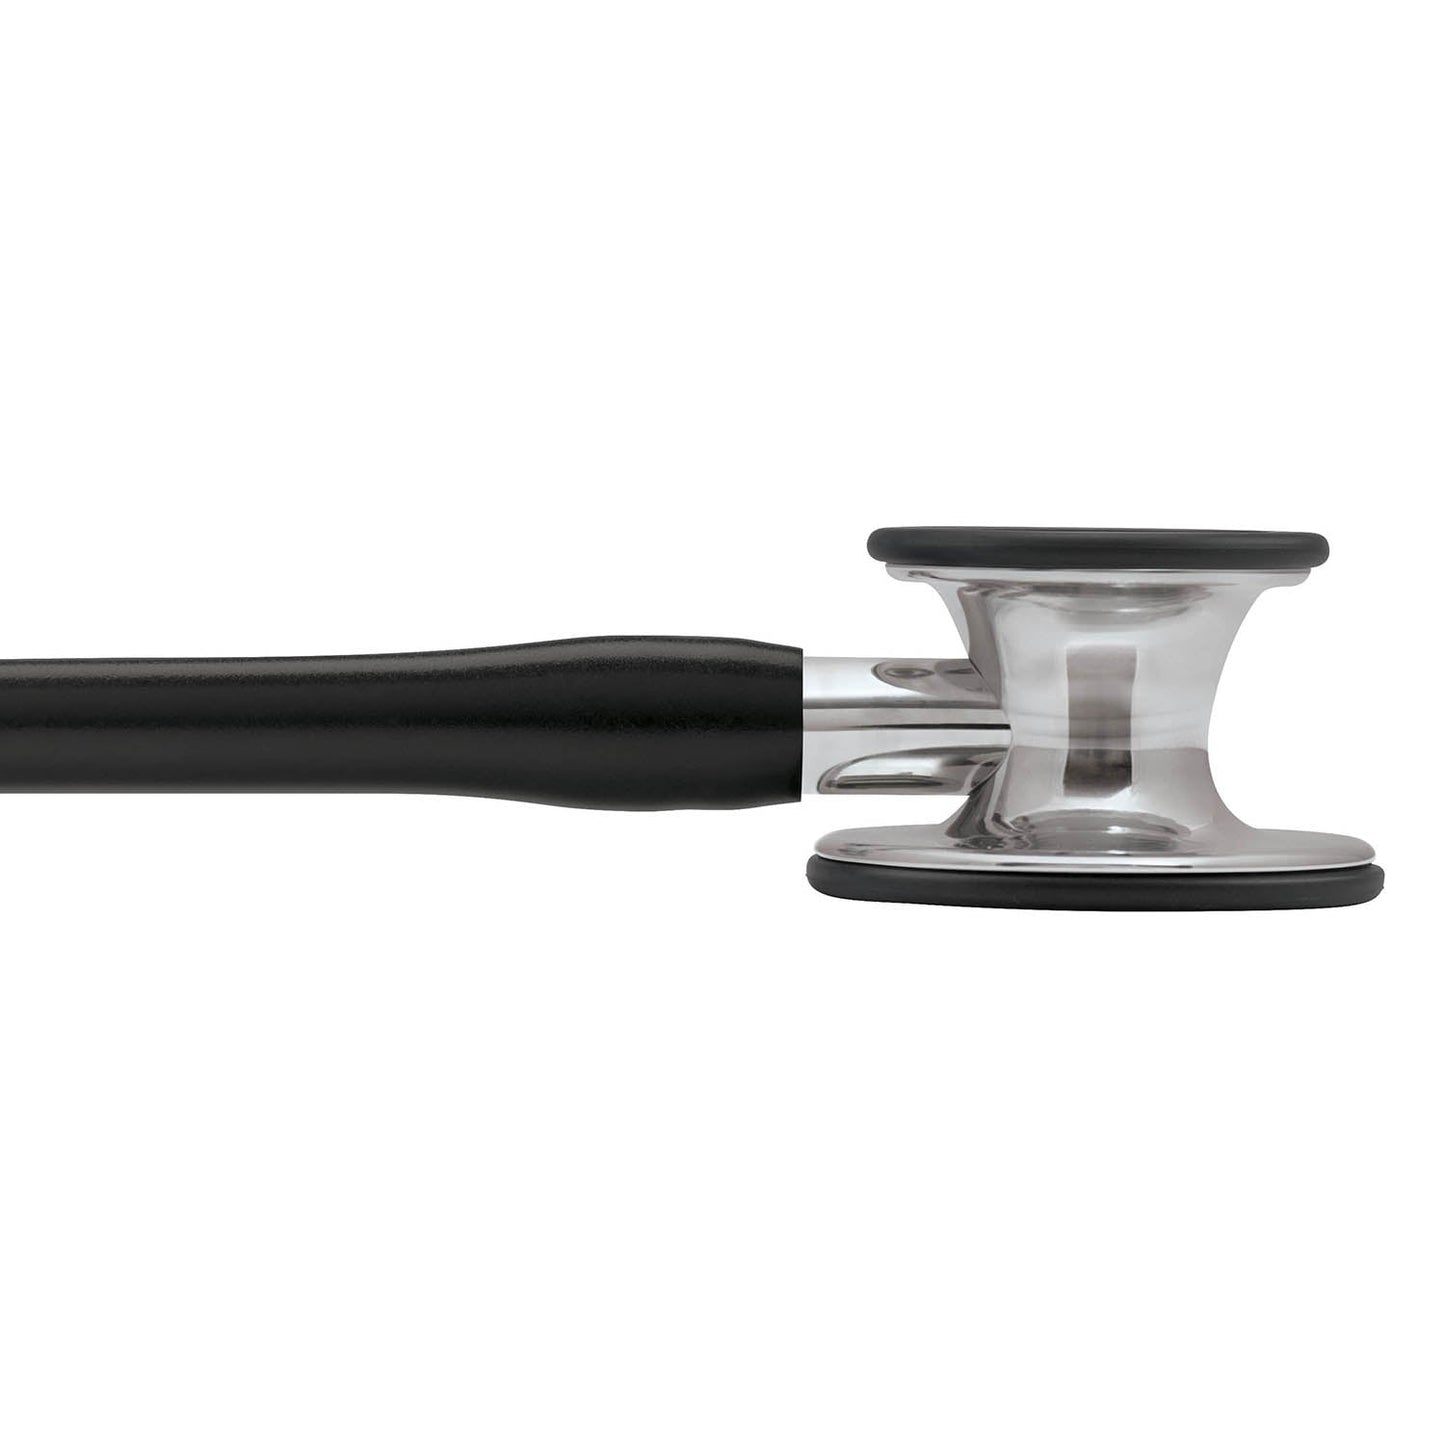 Fonendoscopio diagnóstico 3M™ Littmann® Cardiology IV™, campana y vástago de acabado en espejo, tubo negro y auricular de acero inoxidable, 68,5 cm, 6177